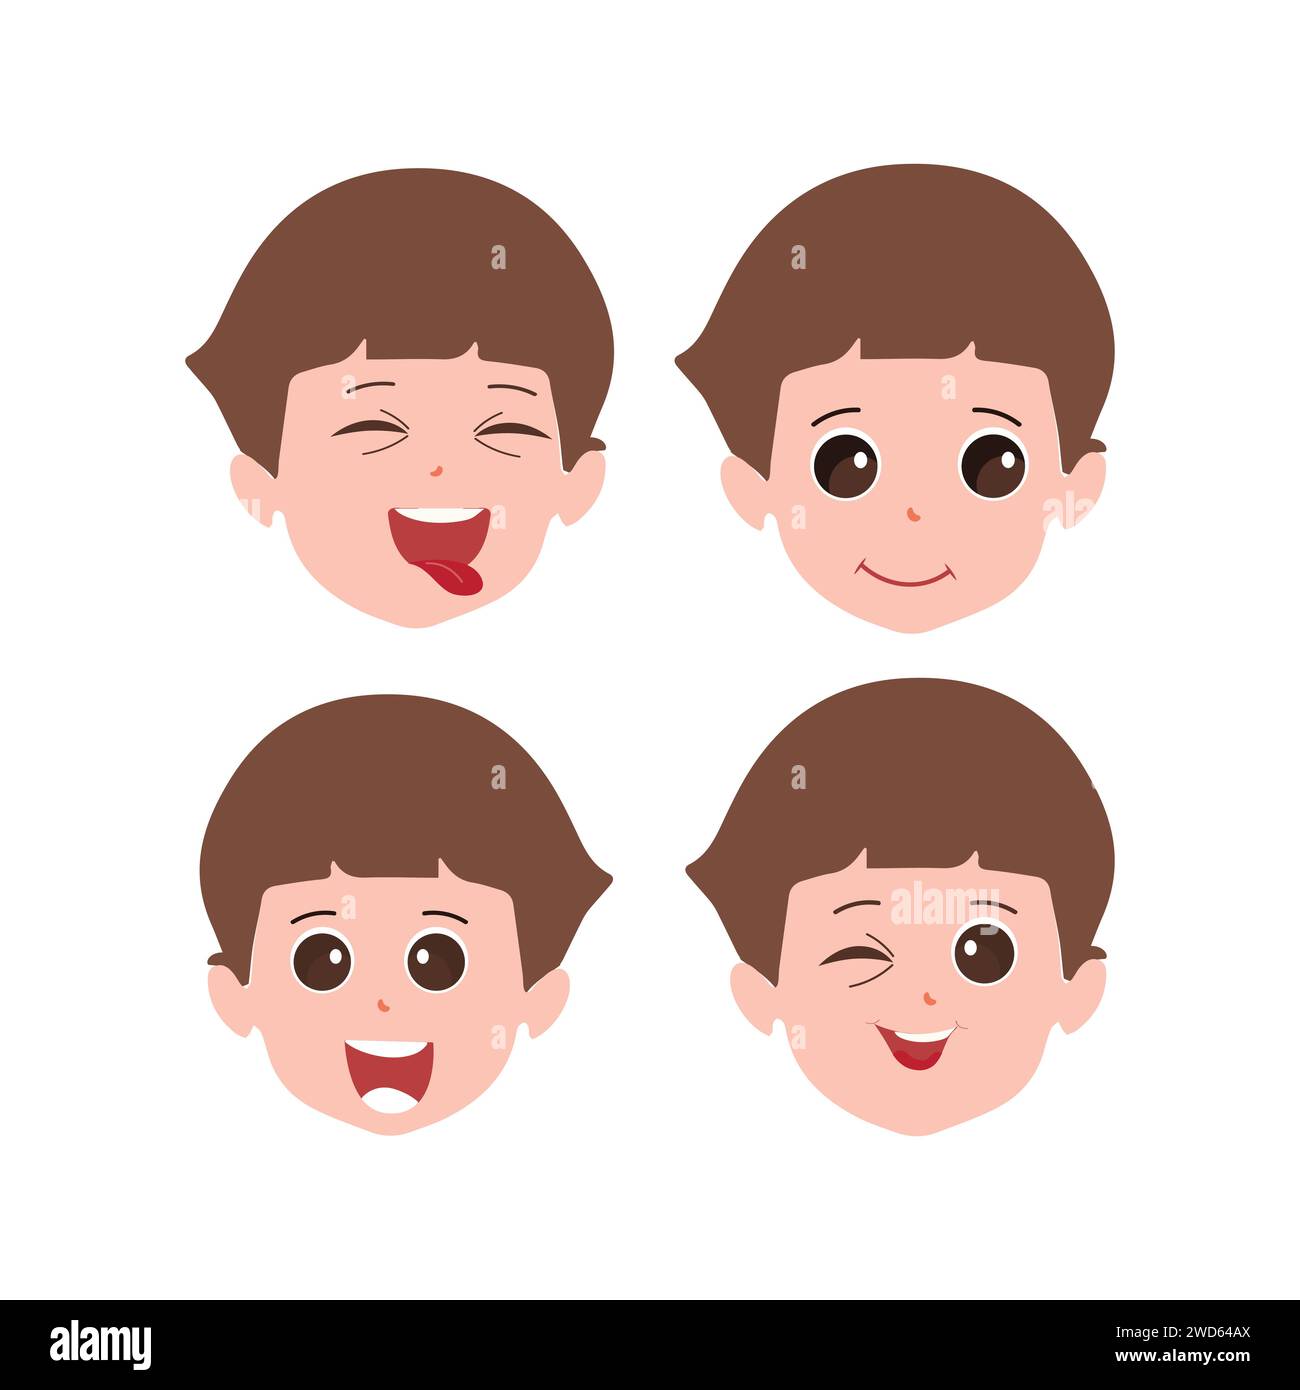 Expressions faciales mignonnes de petit garçon. Vecteur d'illustration de visages d'enfant avec différentes émotions telles que heureux, souriant, riant, clignant, en colère, confus Illustration de Vecteur